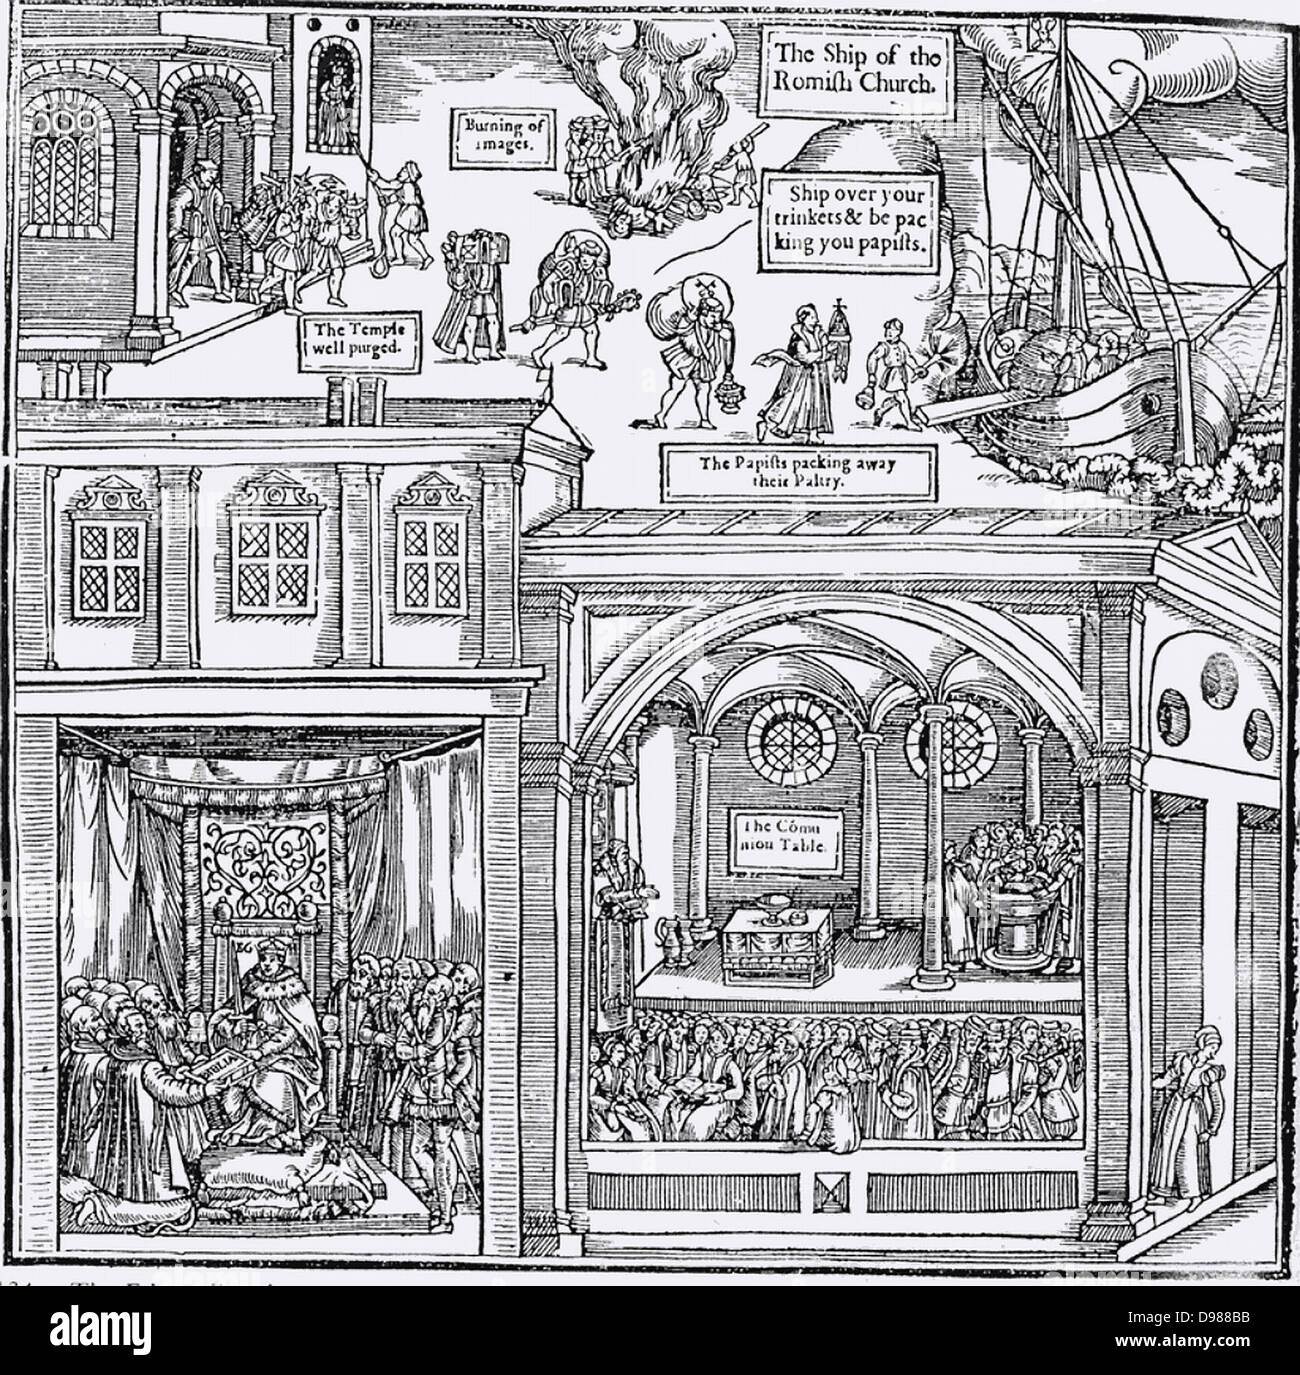 Holzschnitt aus der ersten Ausgabe von John foxe' Das Buch der Märtyrer", London 1563, Darstellung der Ikonoklasmus, oben Mitte. Im oberen Teil des Bildes "papisten" wegräumen Ihrer 'läppische', während die Kirche von Götzen gelöscht wird. An der unteren, linken Kleriker die Bibel von Königin Elizabeth I. rechts unten erhalten, zeigt das Innere der Evangelischen Kirche mit der Gemeinde eine Predigt zu hören, ein somple Gemeinschaft Tabelle rther als einen Altar und eine Taufe statt. Stockfoto